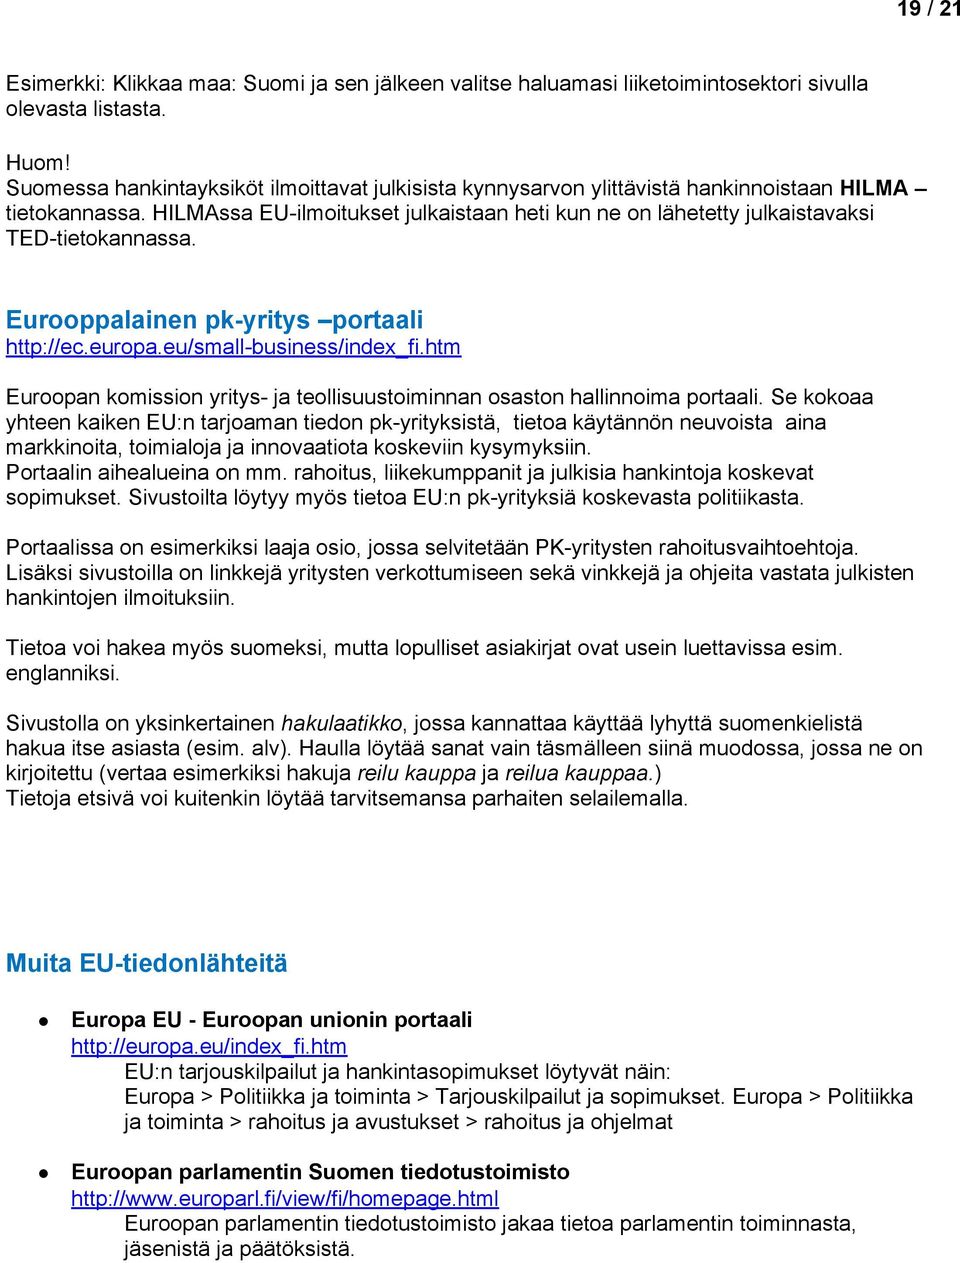 Eurppalainen pk-yritys prtaali http://ec.eurpa.eu/small-business/index_fi.htm Eurpan kmissin yritys- ja tellisuustiminnan sastn hallinnima prtaali.